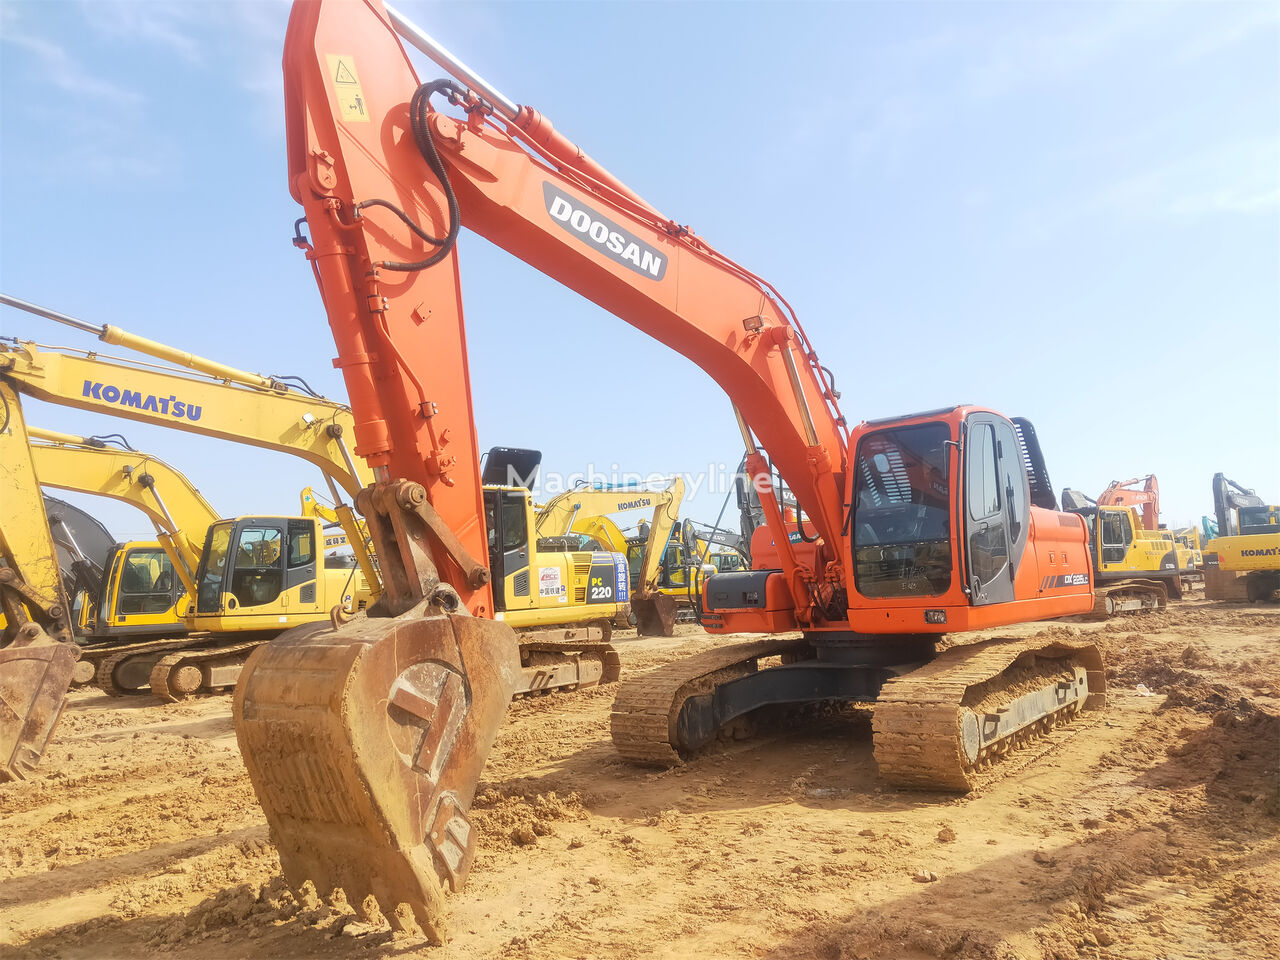 Doosan DX225LC tracked excavator